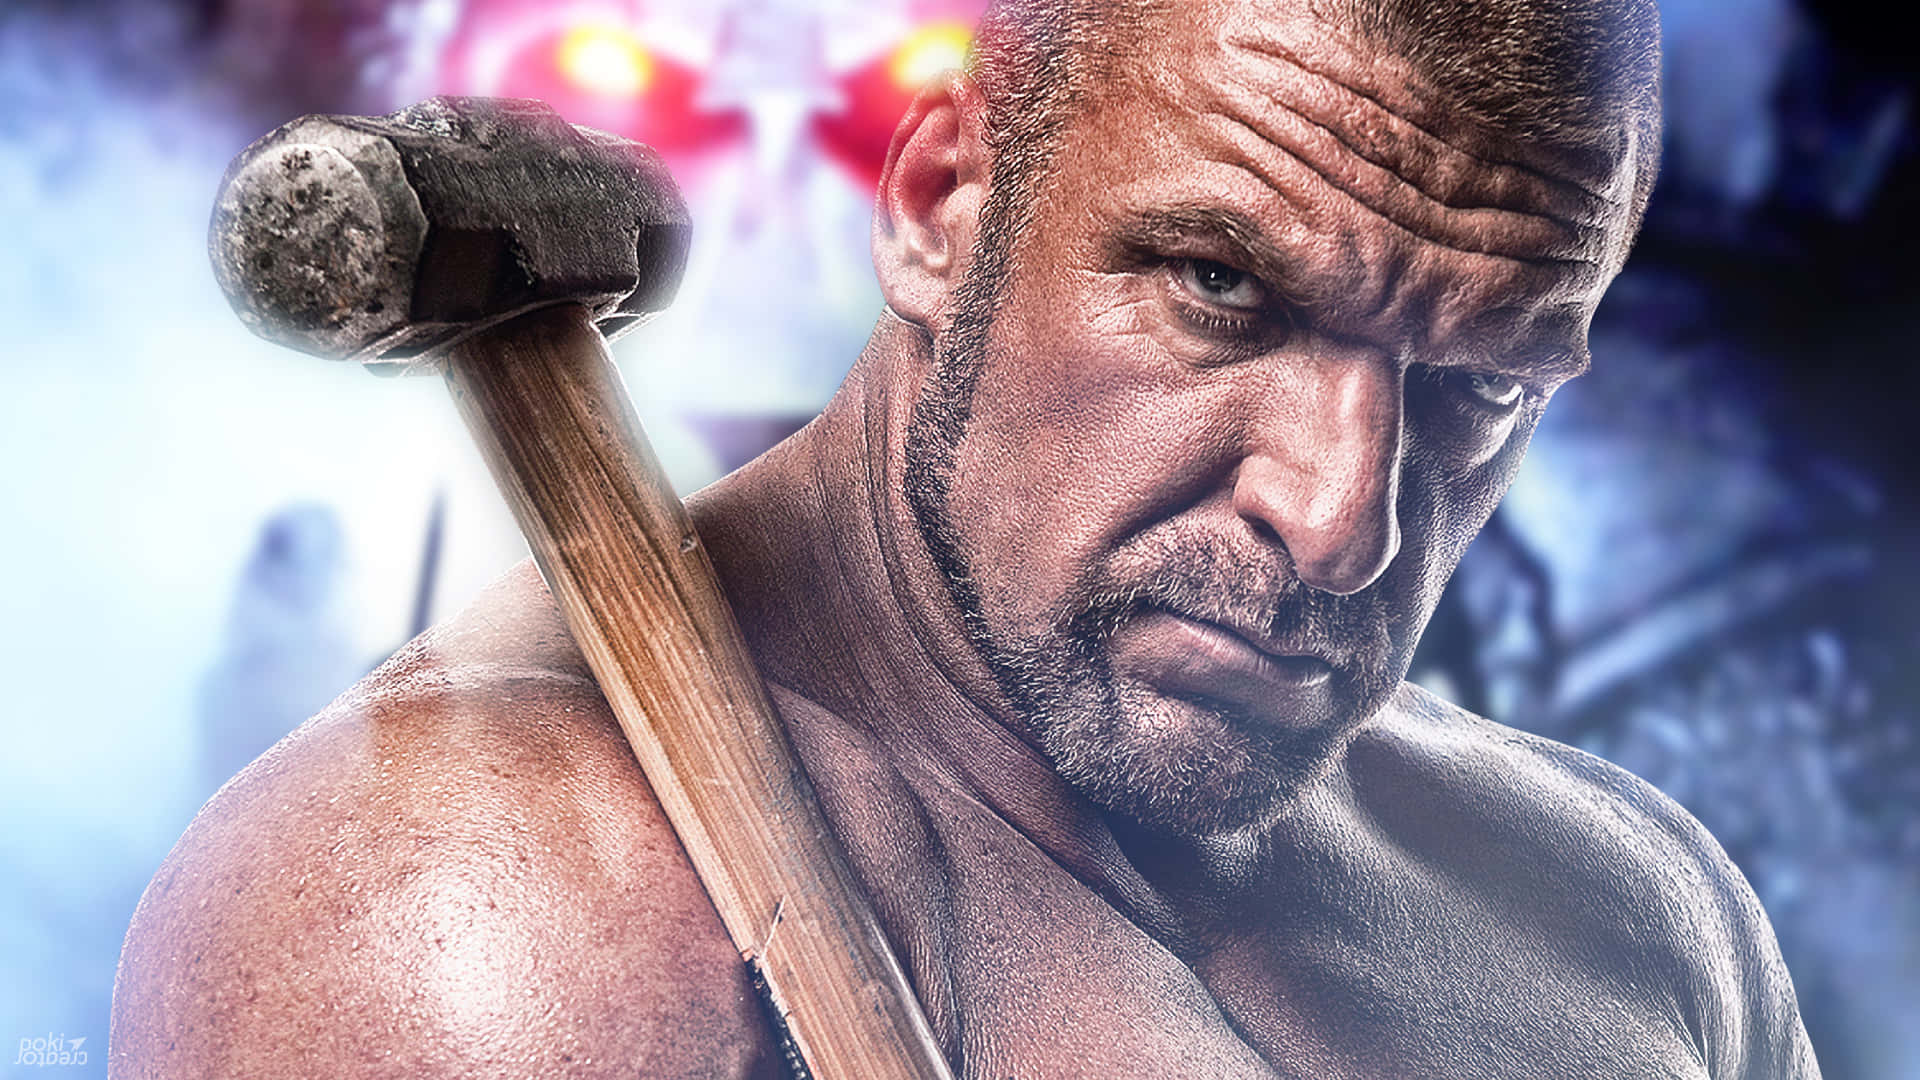 Triple H Holding A Sledgehammer Wallpaper